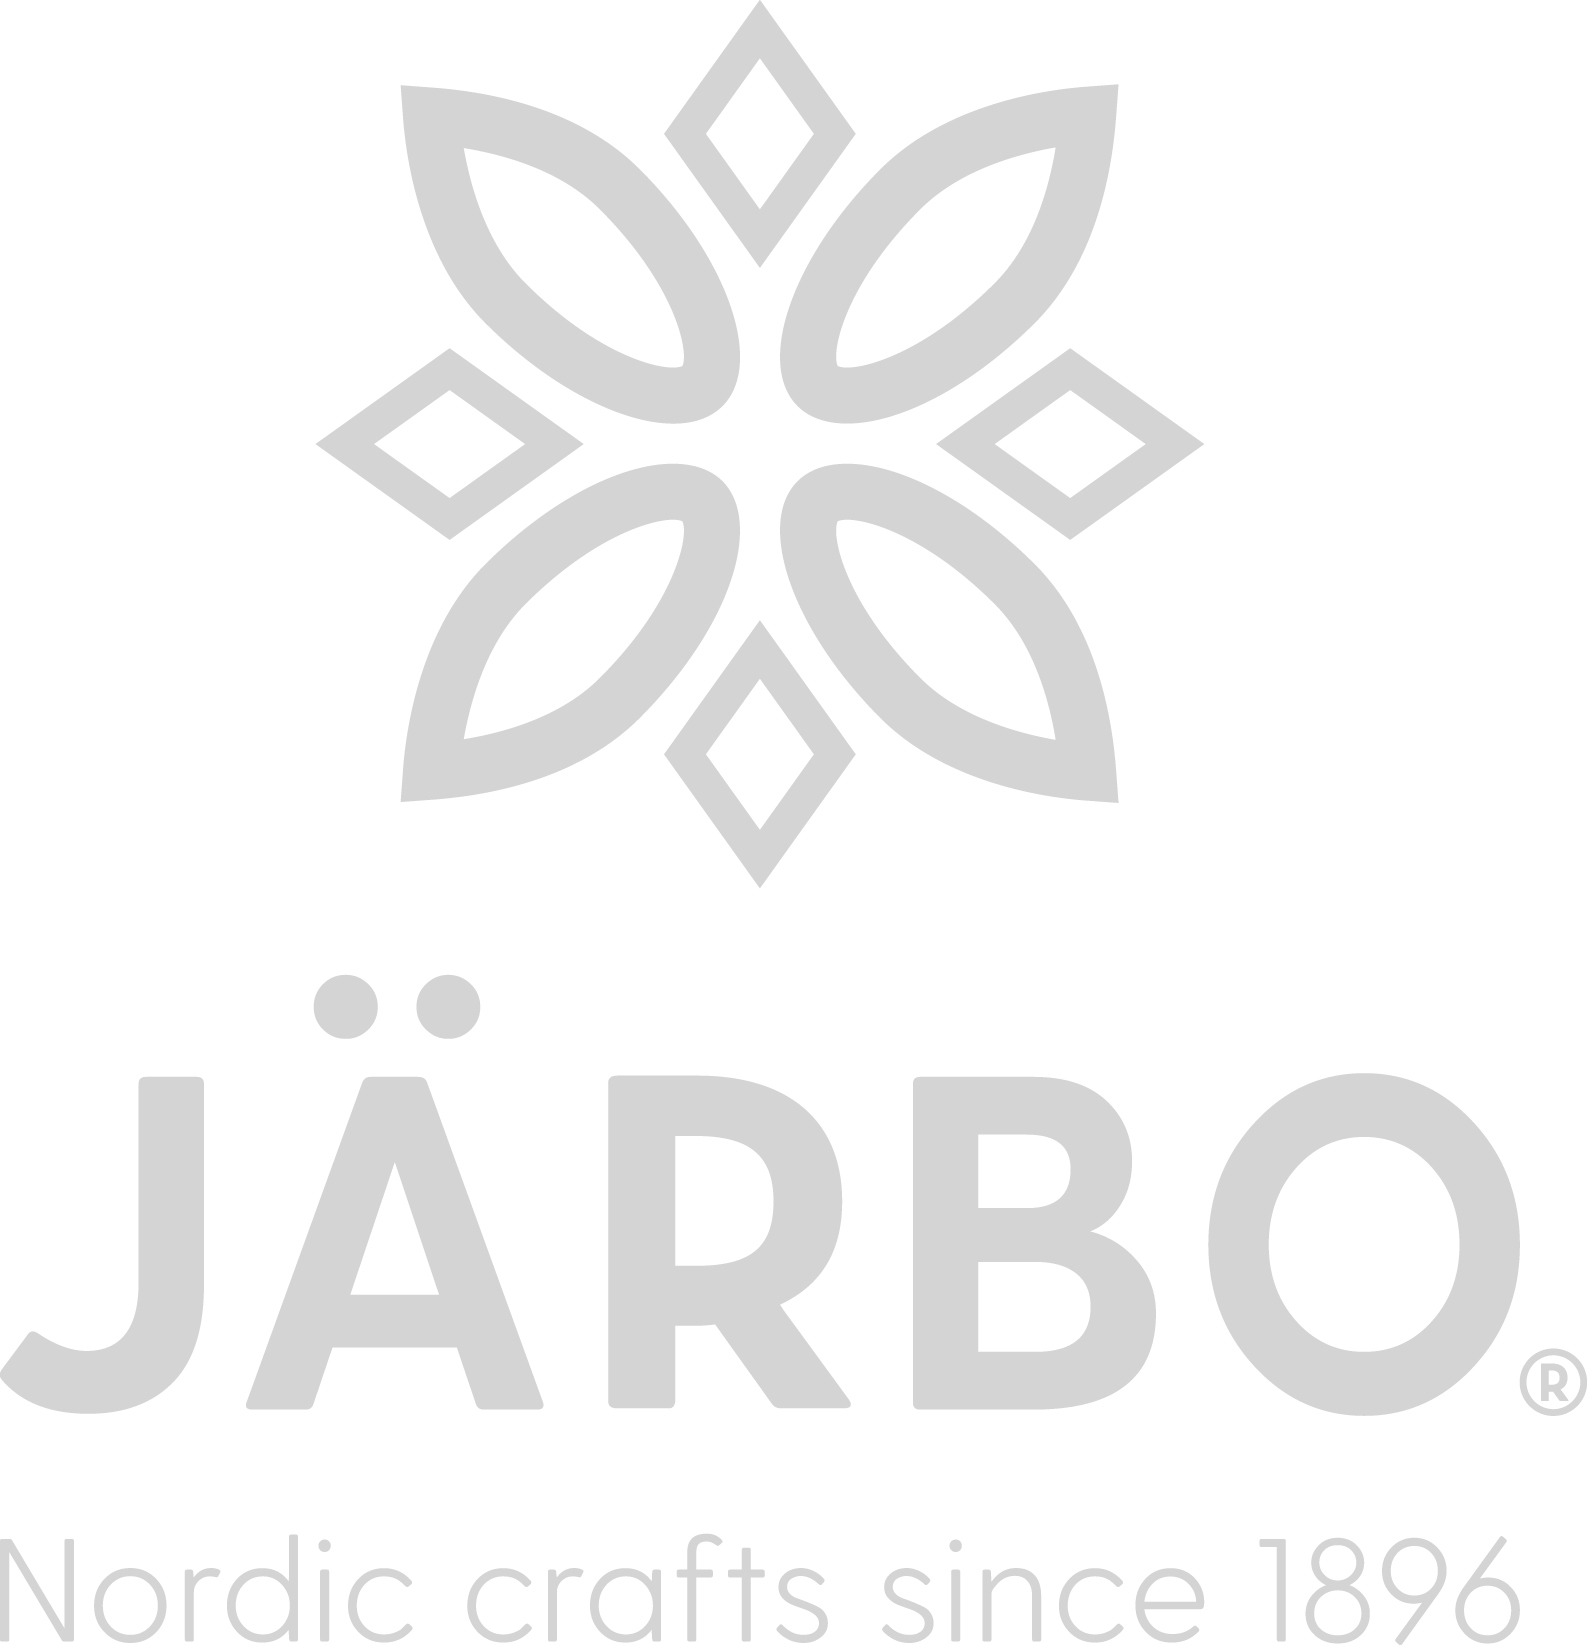 Järbo Garn AB